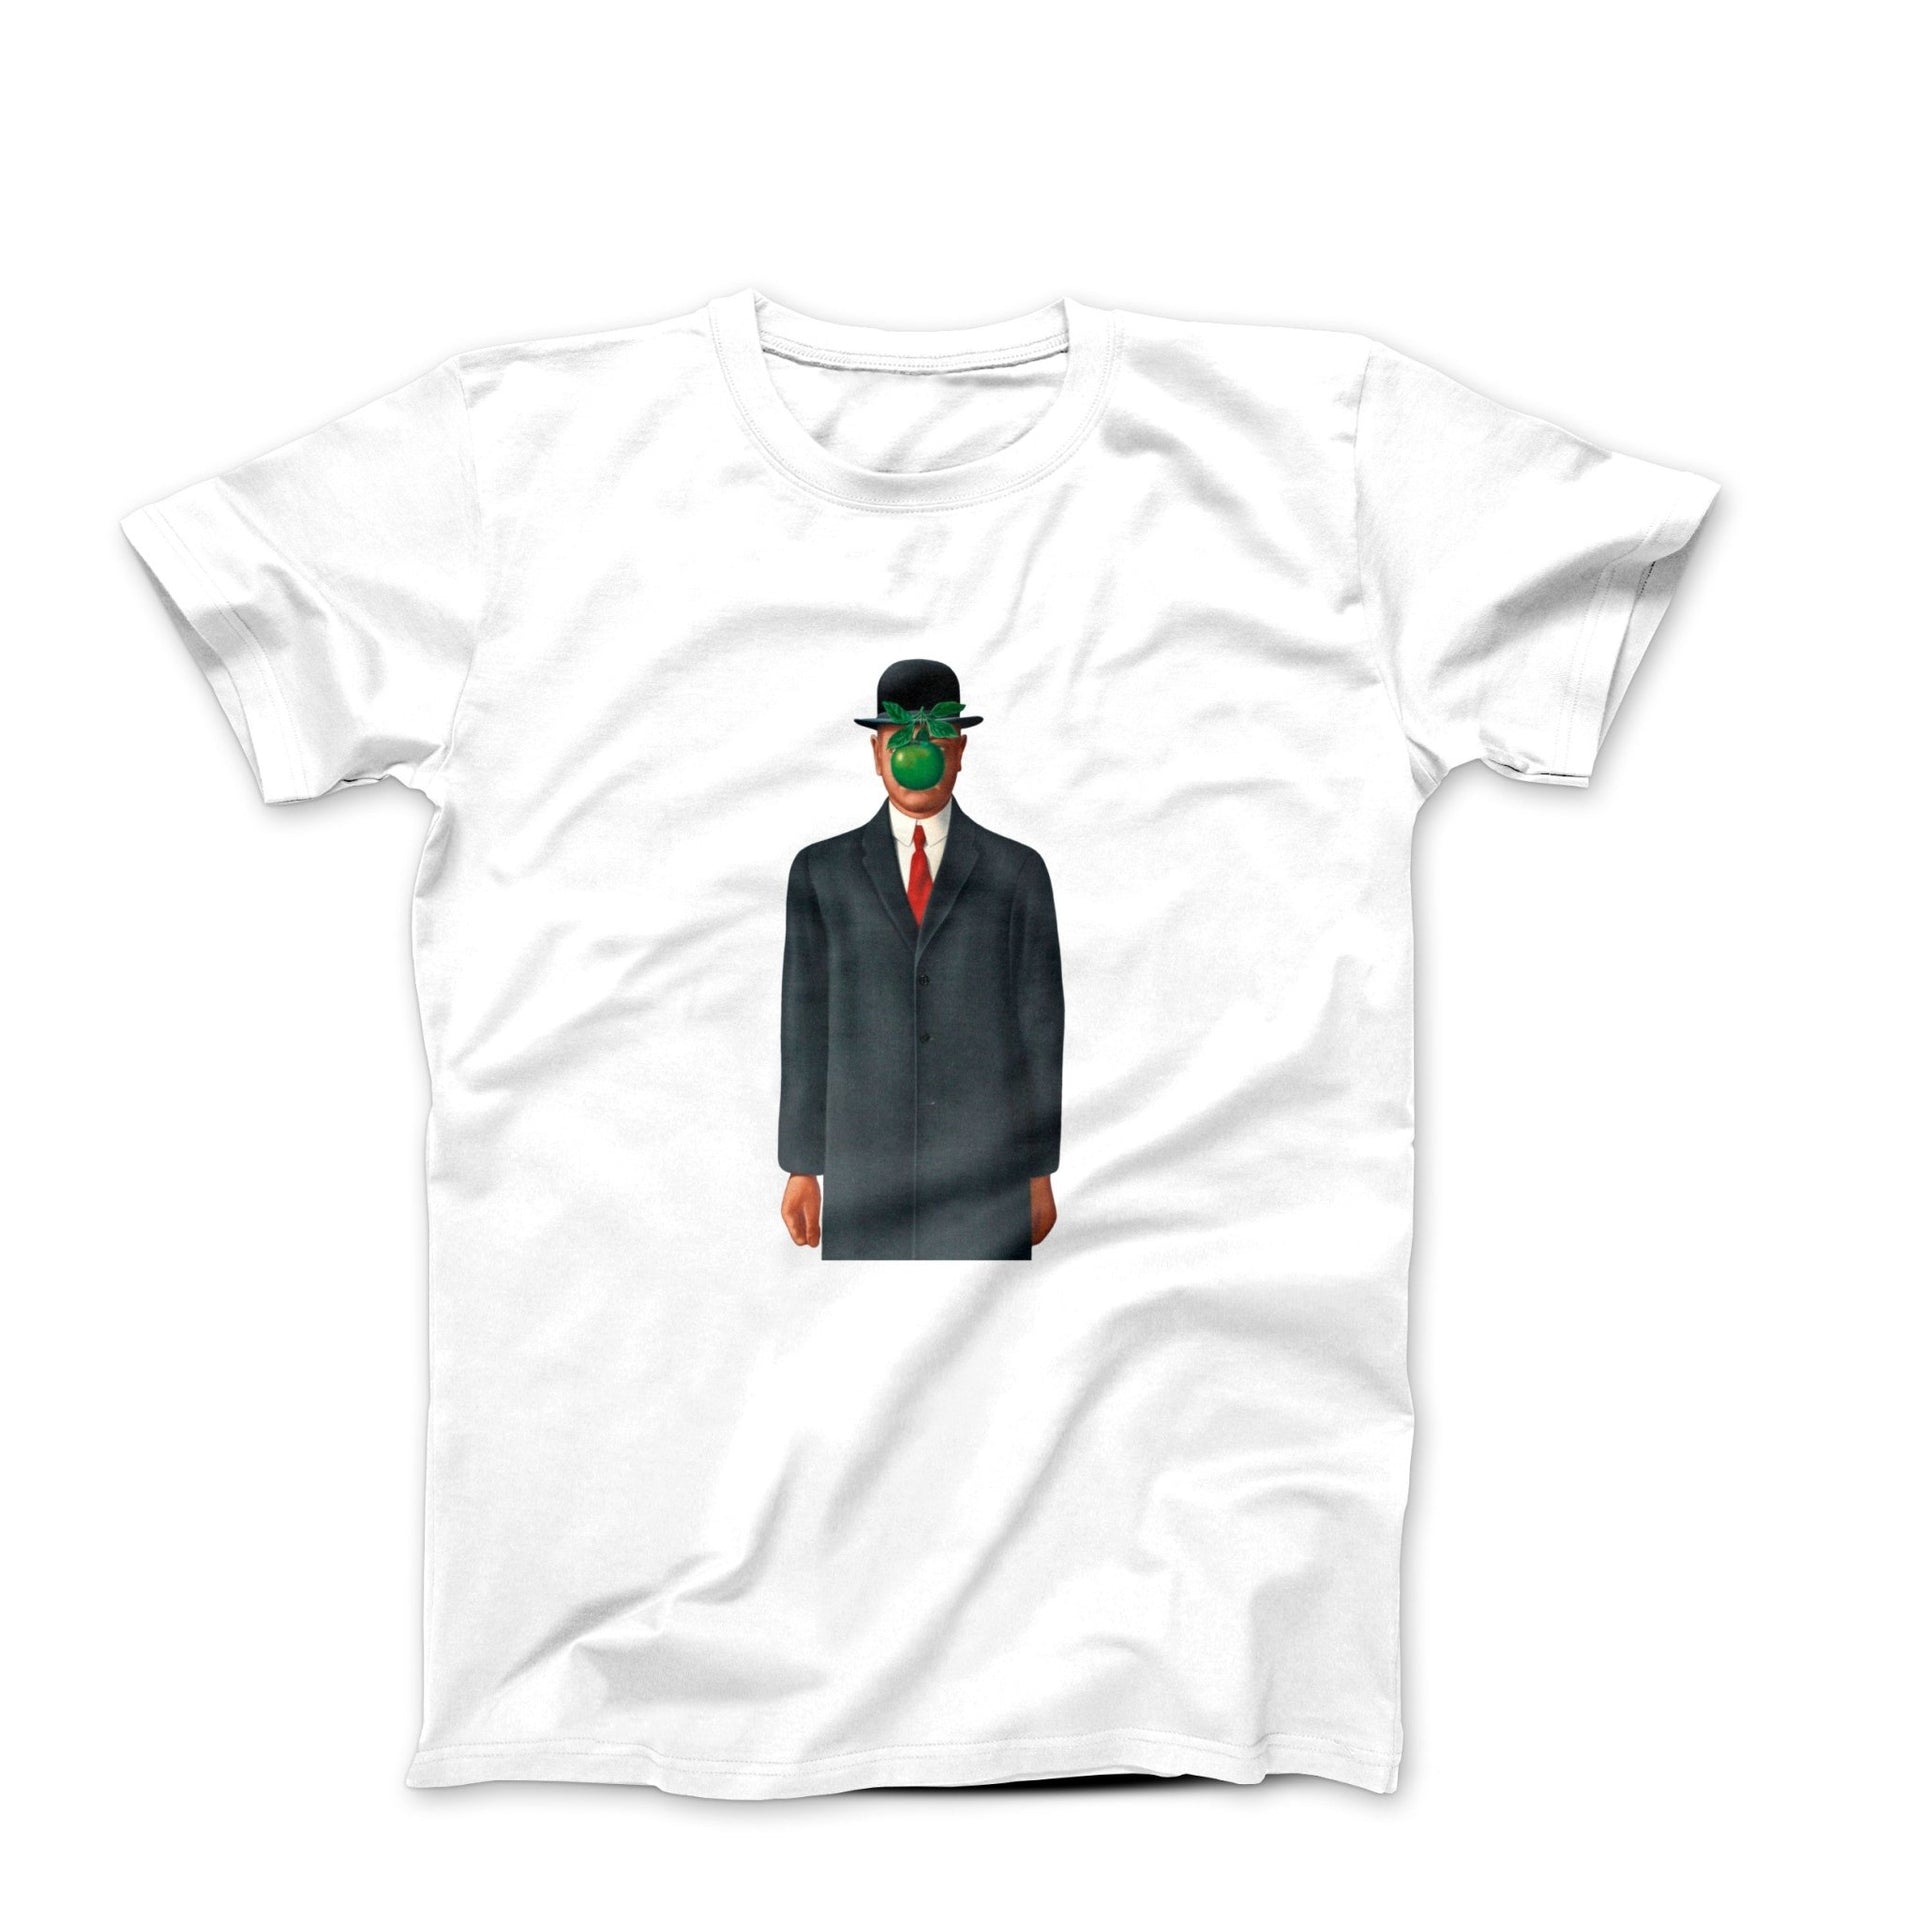 Rene Magritte The Son of Man (1964) Artwork T-Shirt - Clothing - Harvey Ltd